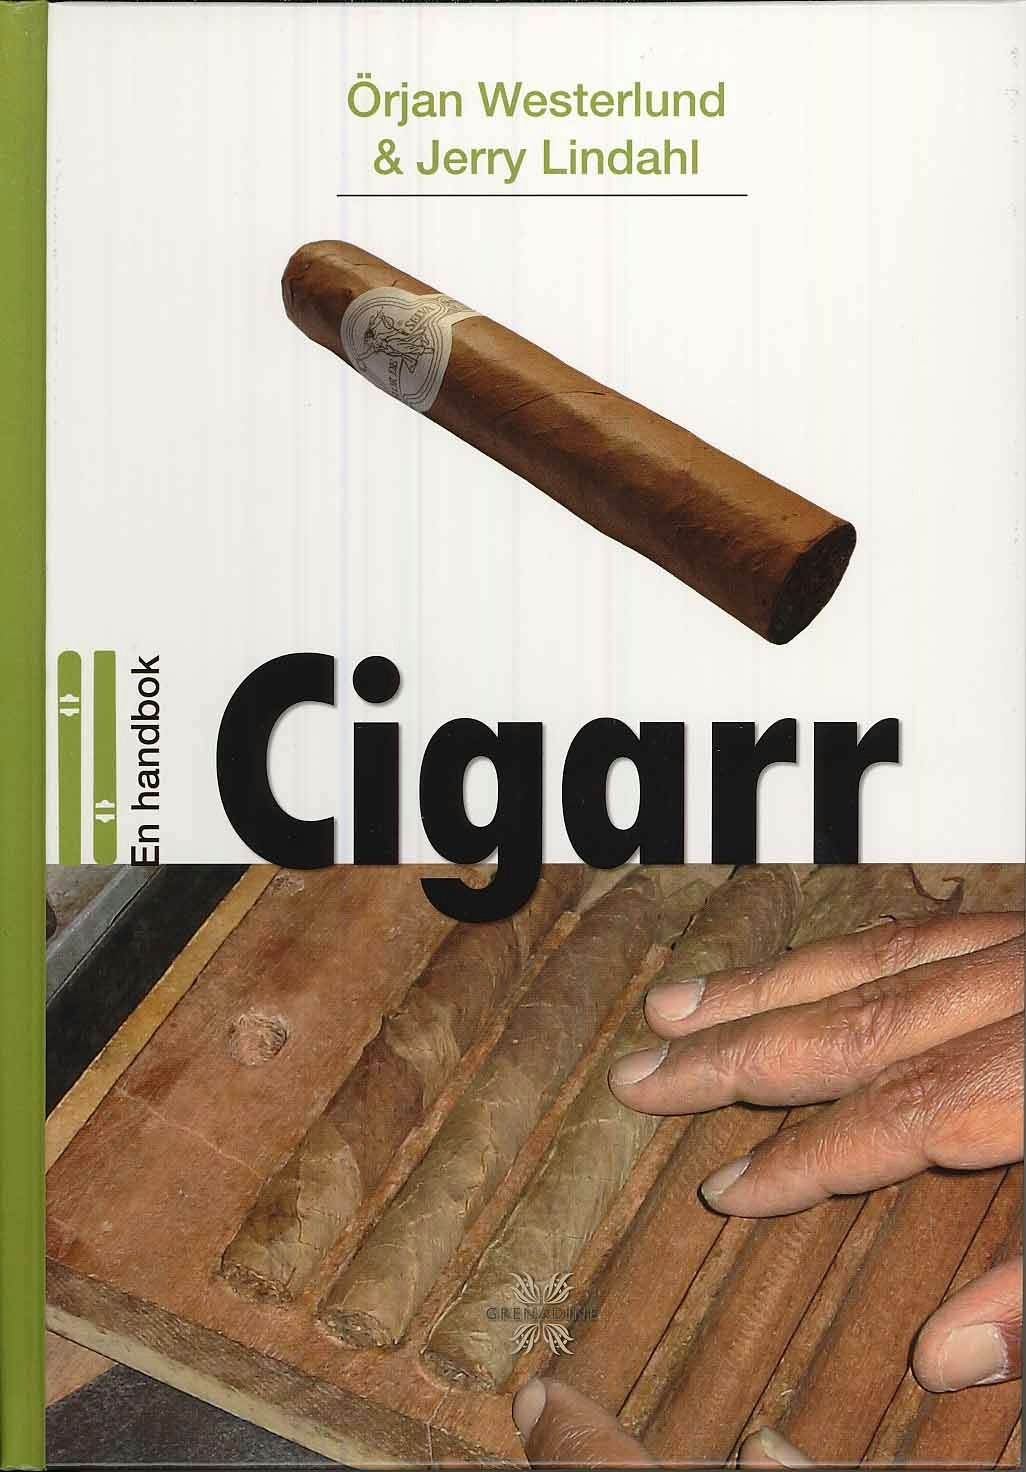 En handbok cigarr